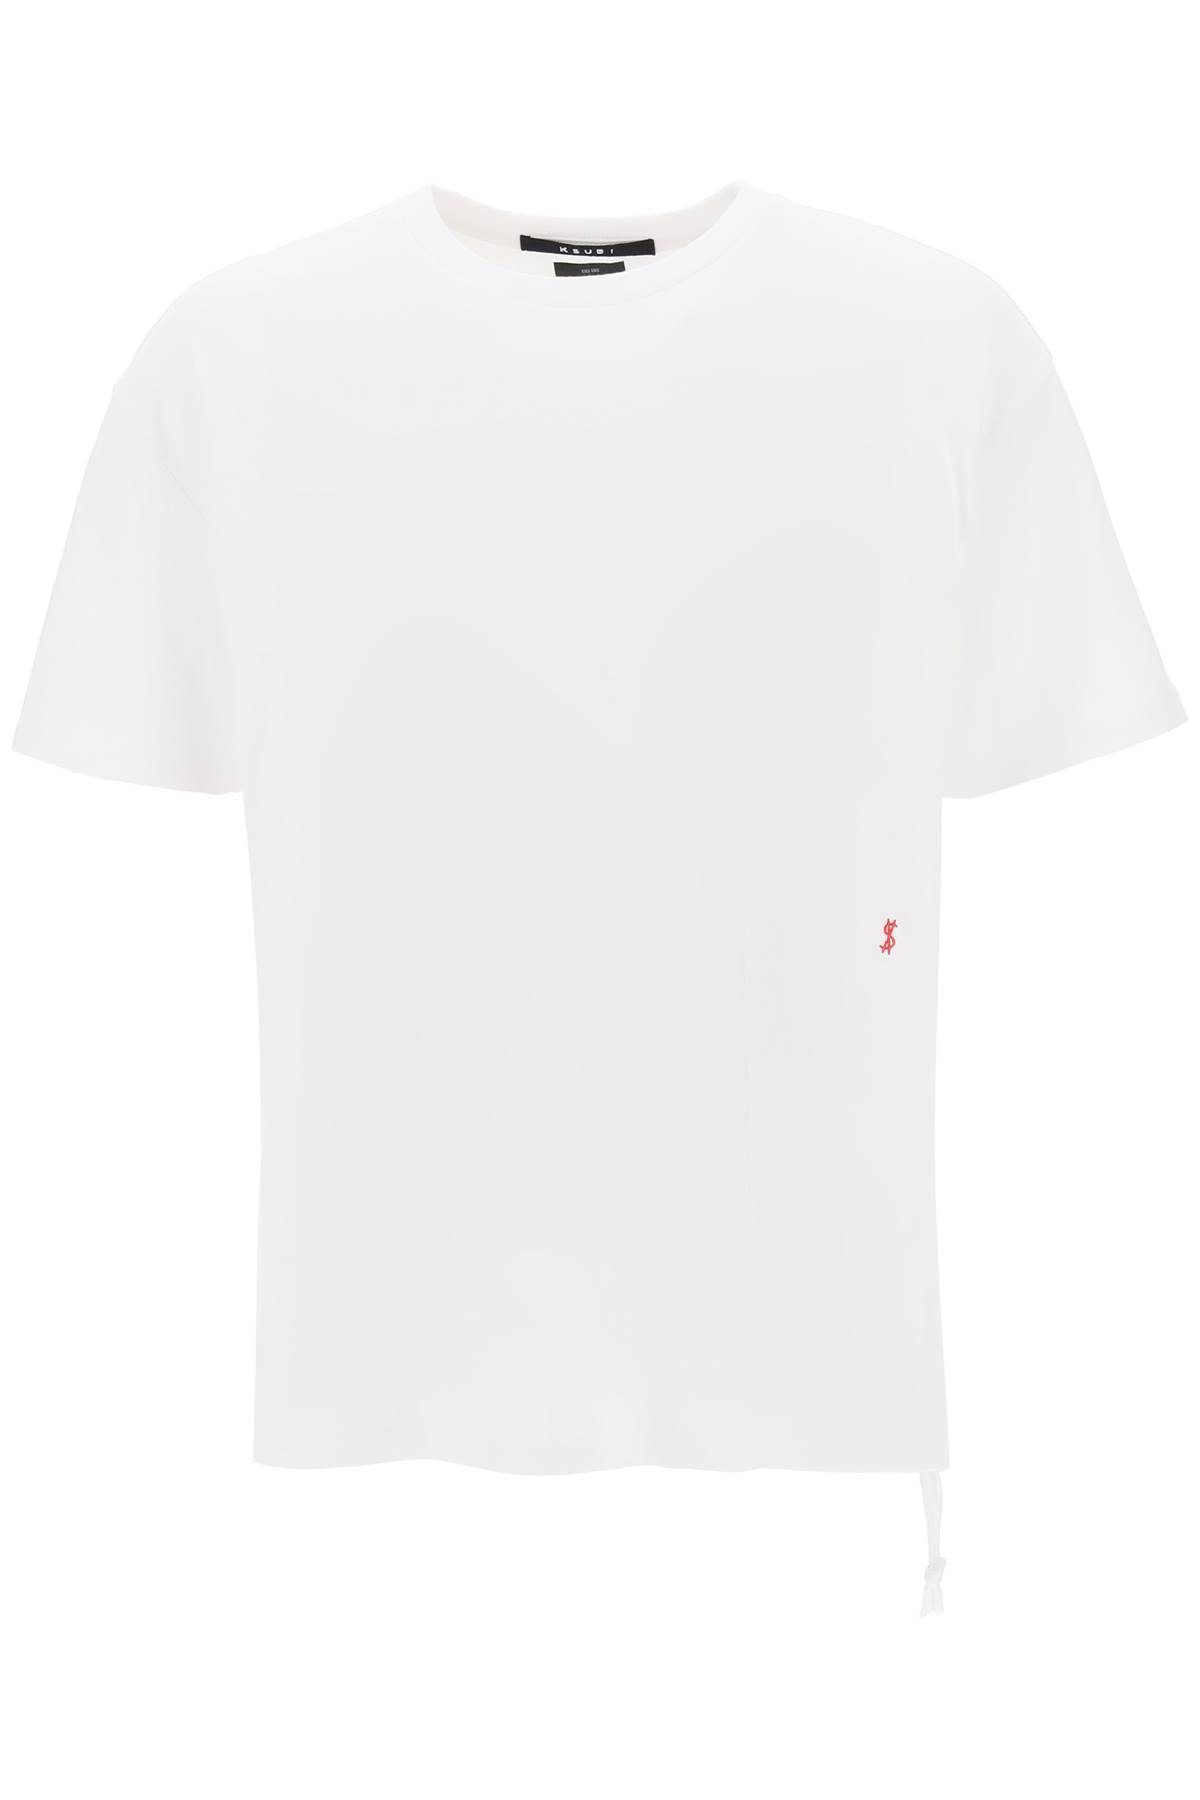 KSUBI KSUBI '4x4 biggie' t-shirt